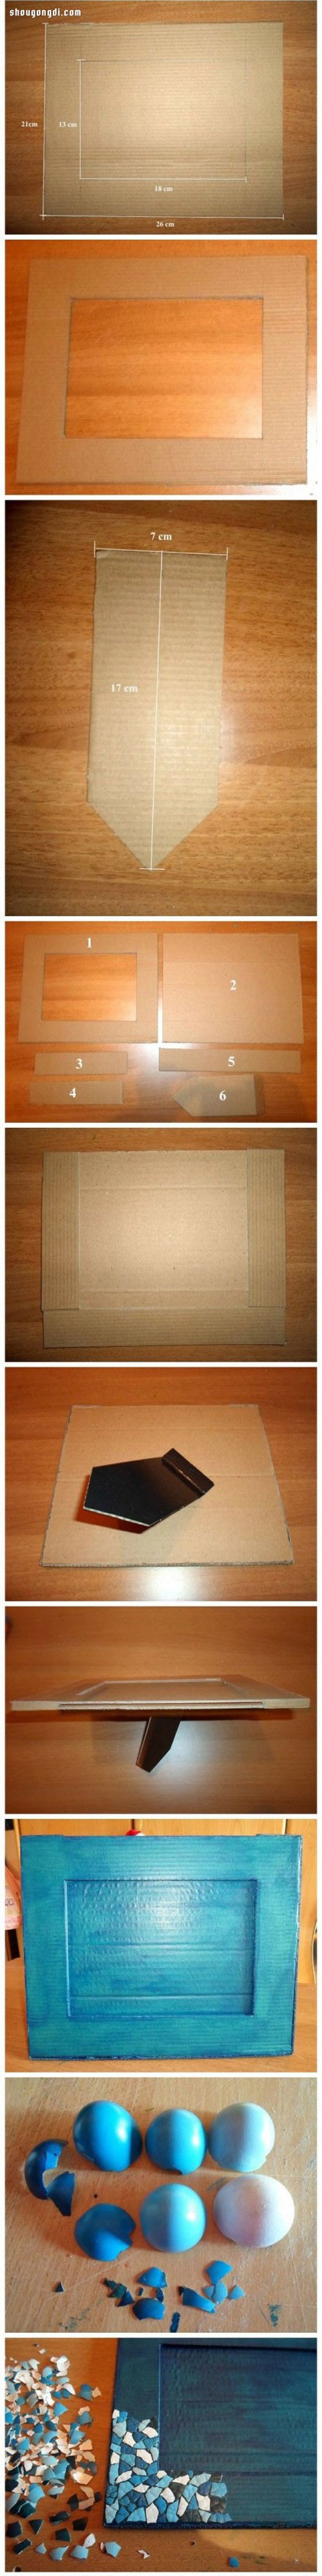 廢紙箱/瓦楞紙板+雞蛋殼 手工制作馬賽克相框- www.shougongdi.com